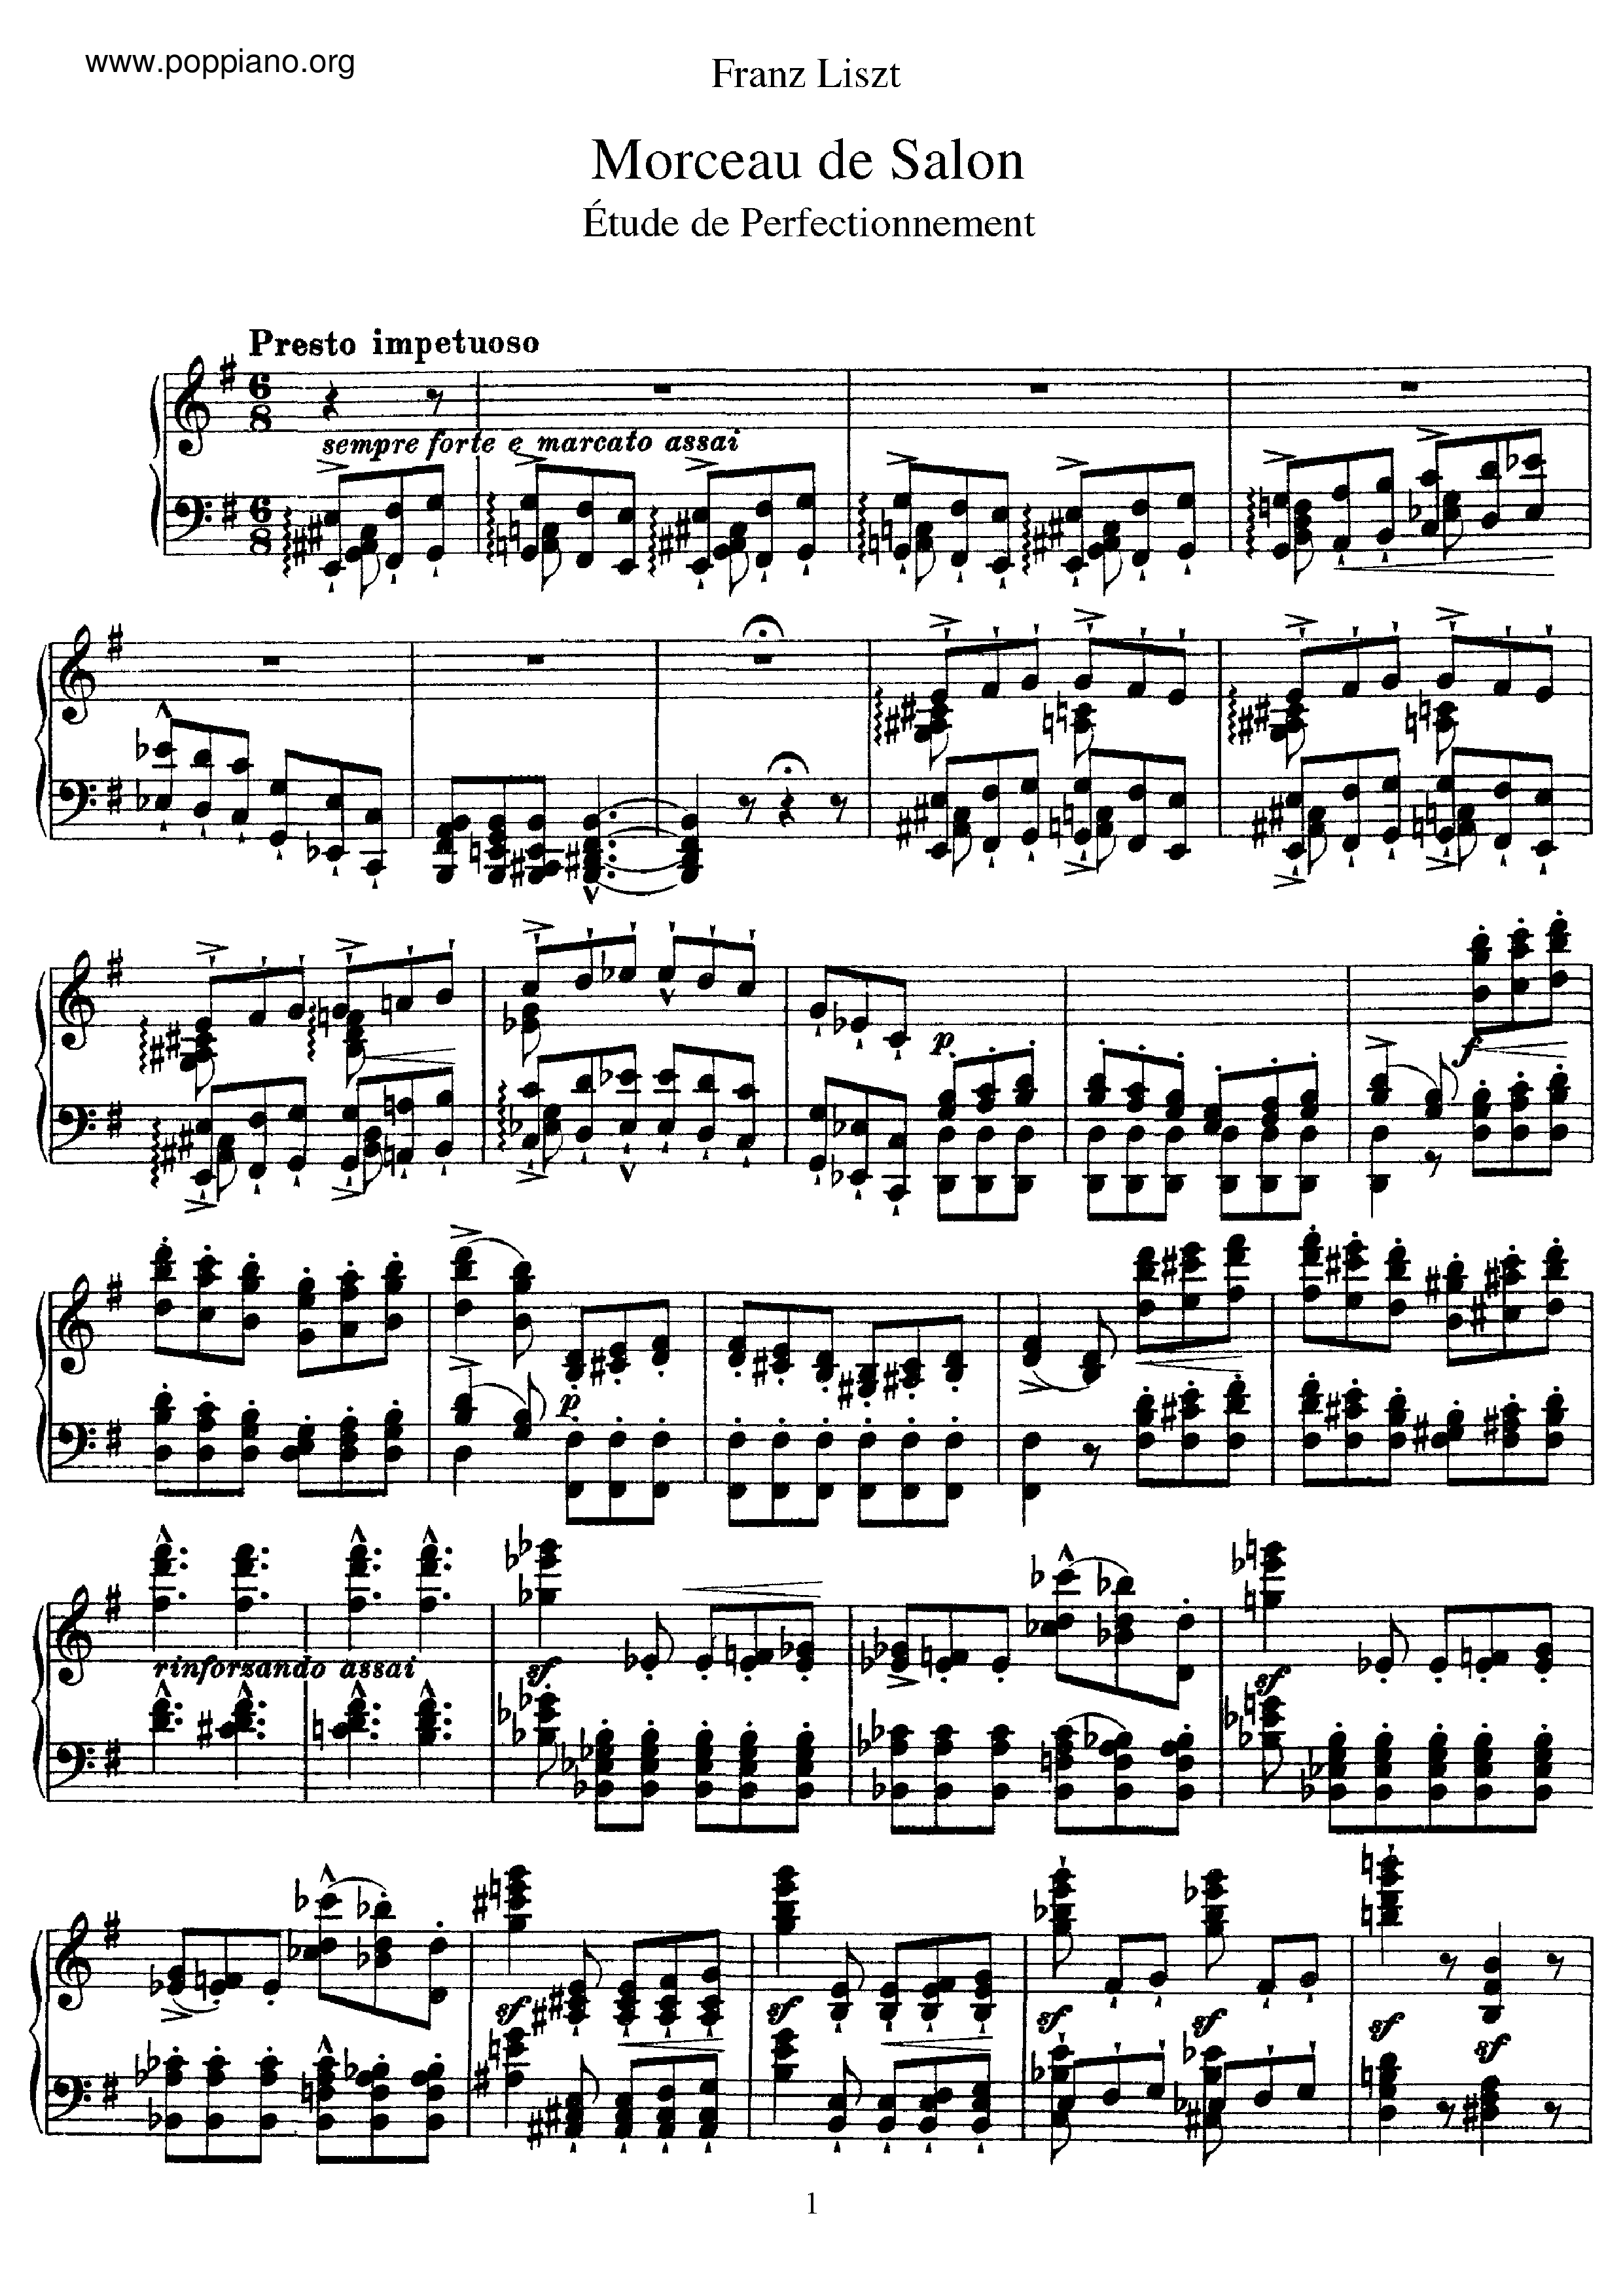 Morceau de Salon, Etude de perfectionnement, S.142琴譜